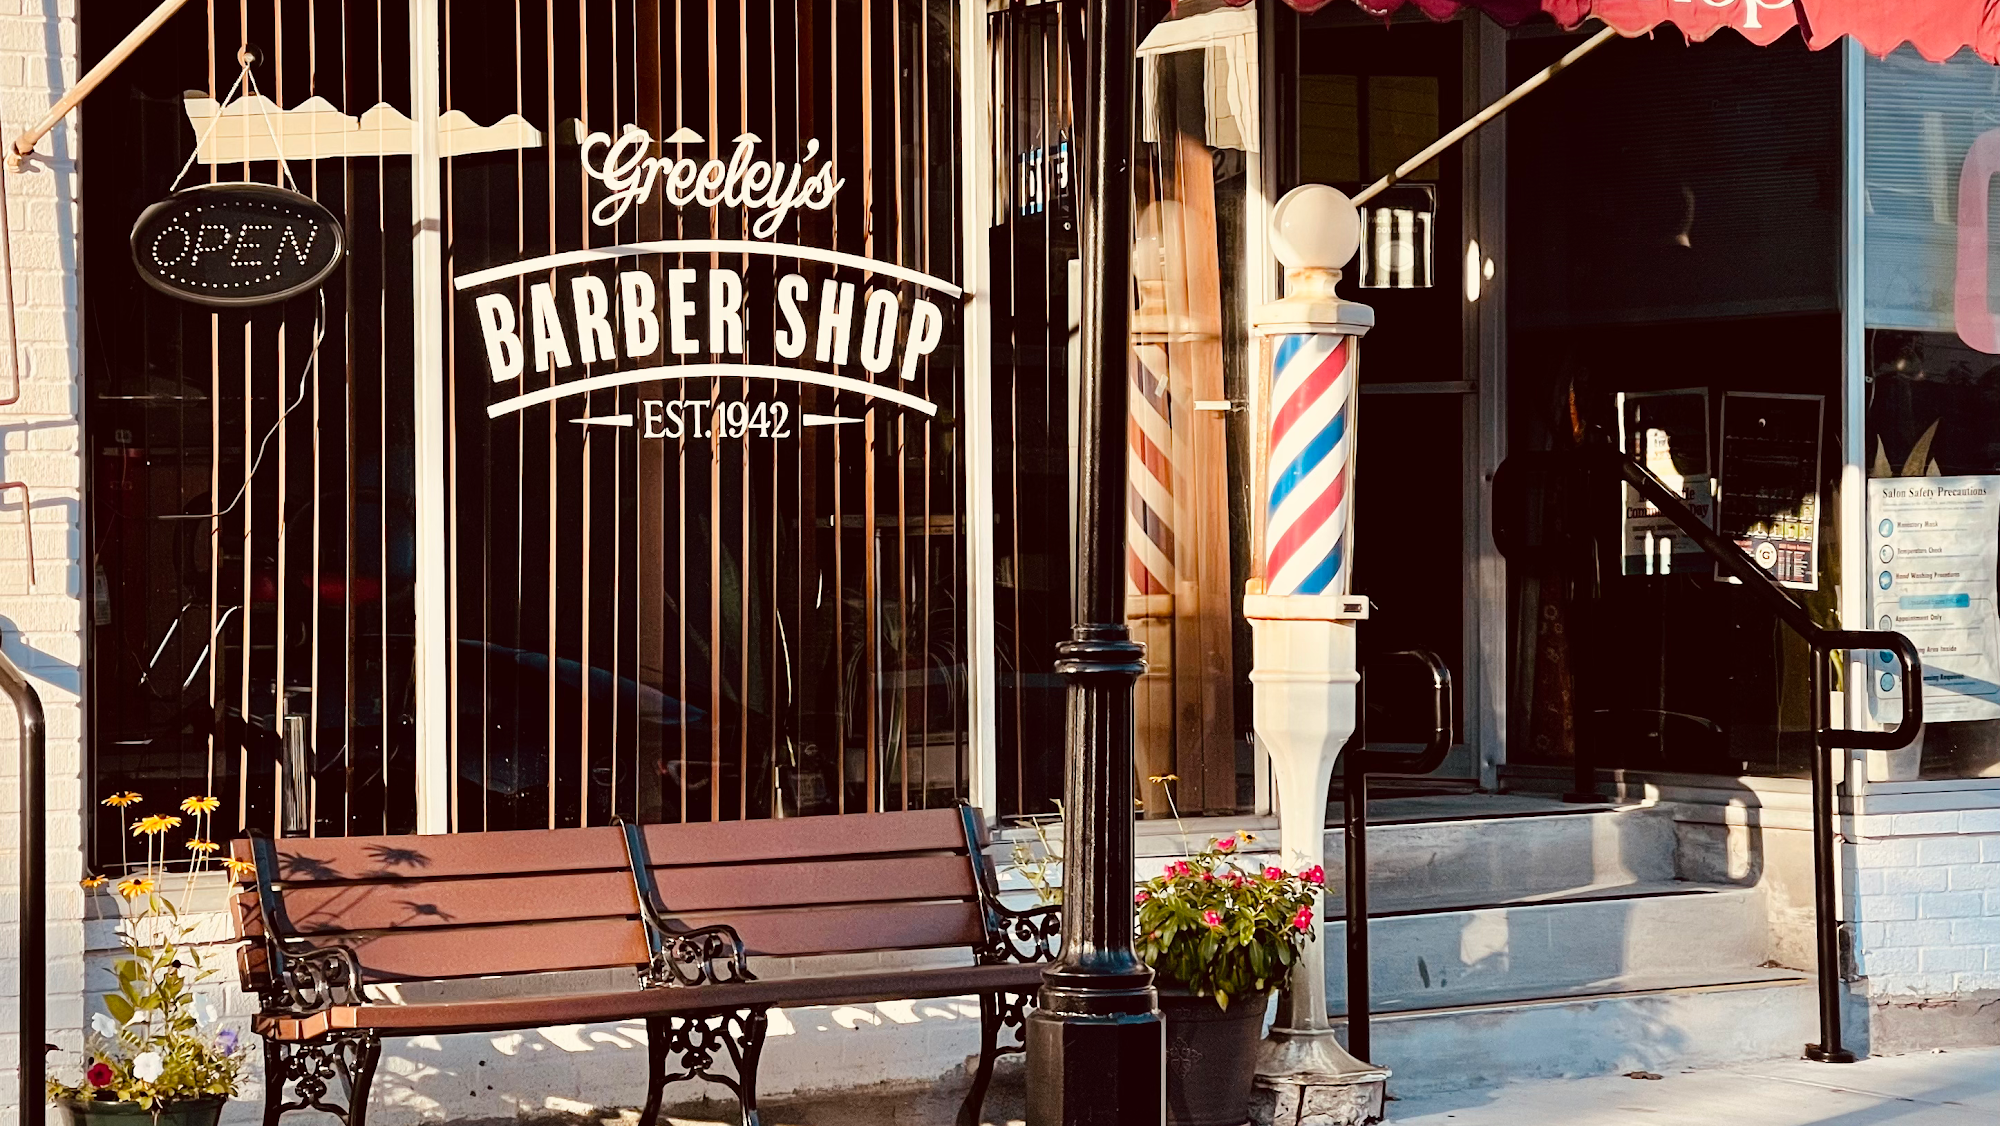 Greeley Barber Shop